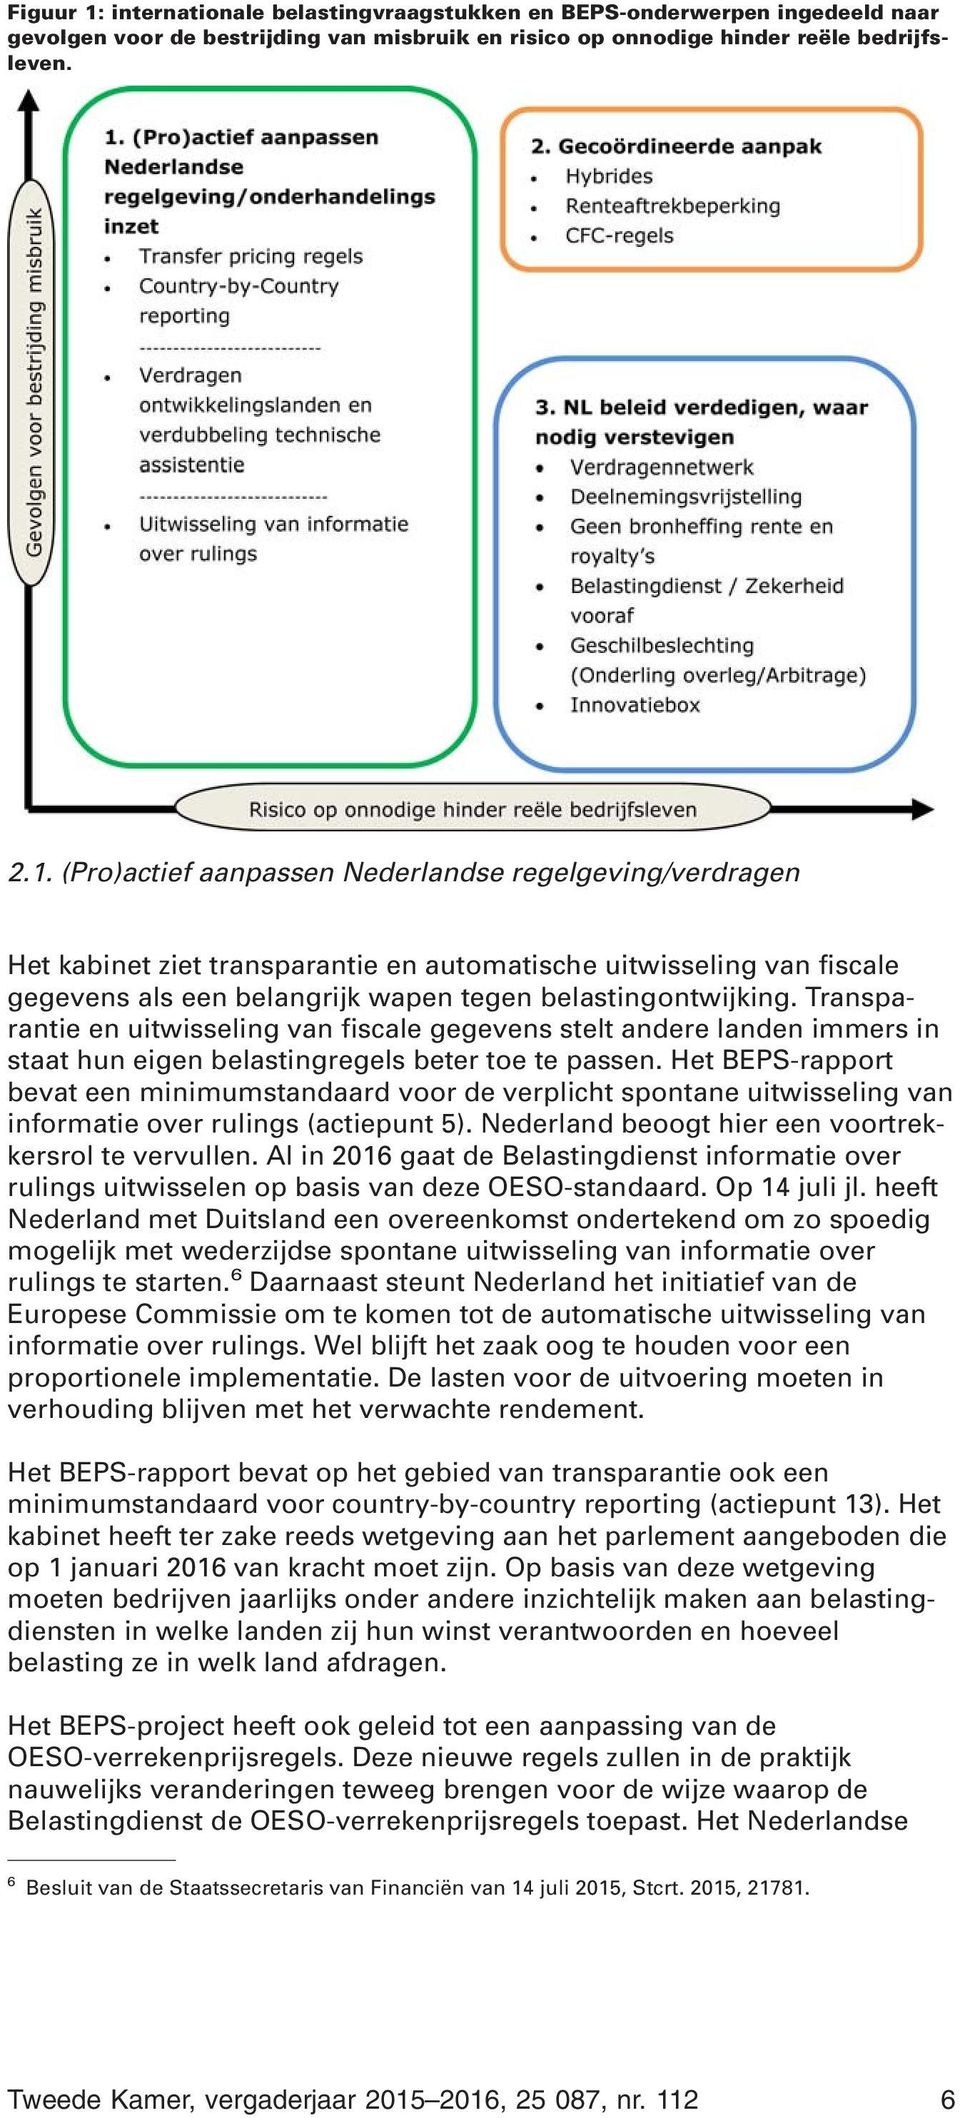 Het BEPS-rapport bevat een minimumstandaard voor de verplicht spontane uitwisseling van informatie over rulings (actiepunt 5). Nederland beoogt hier een voortrekkersrol te vervullen.